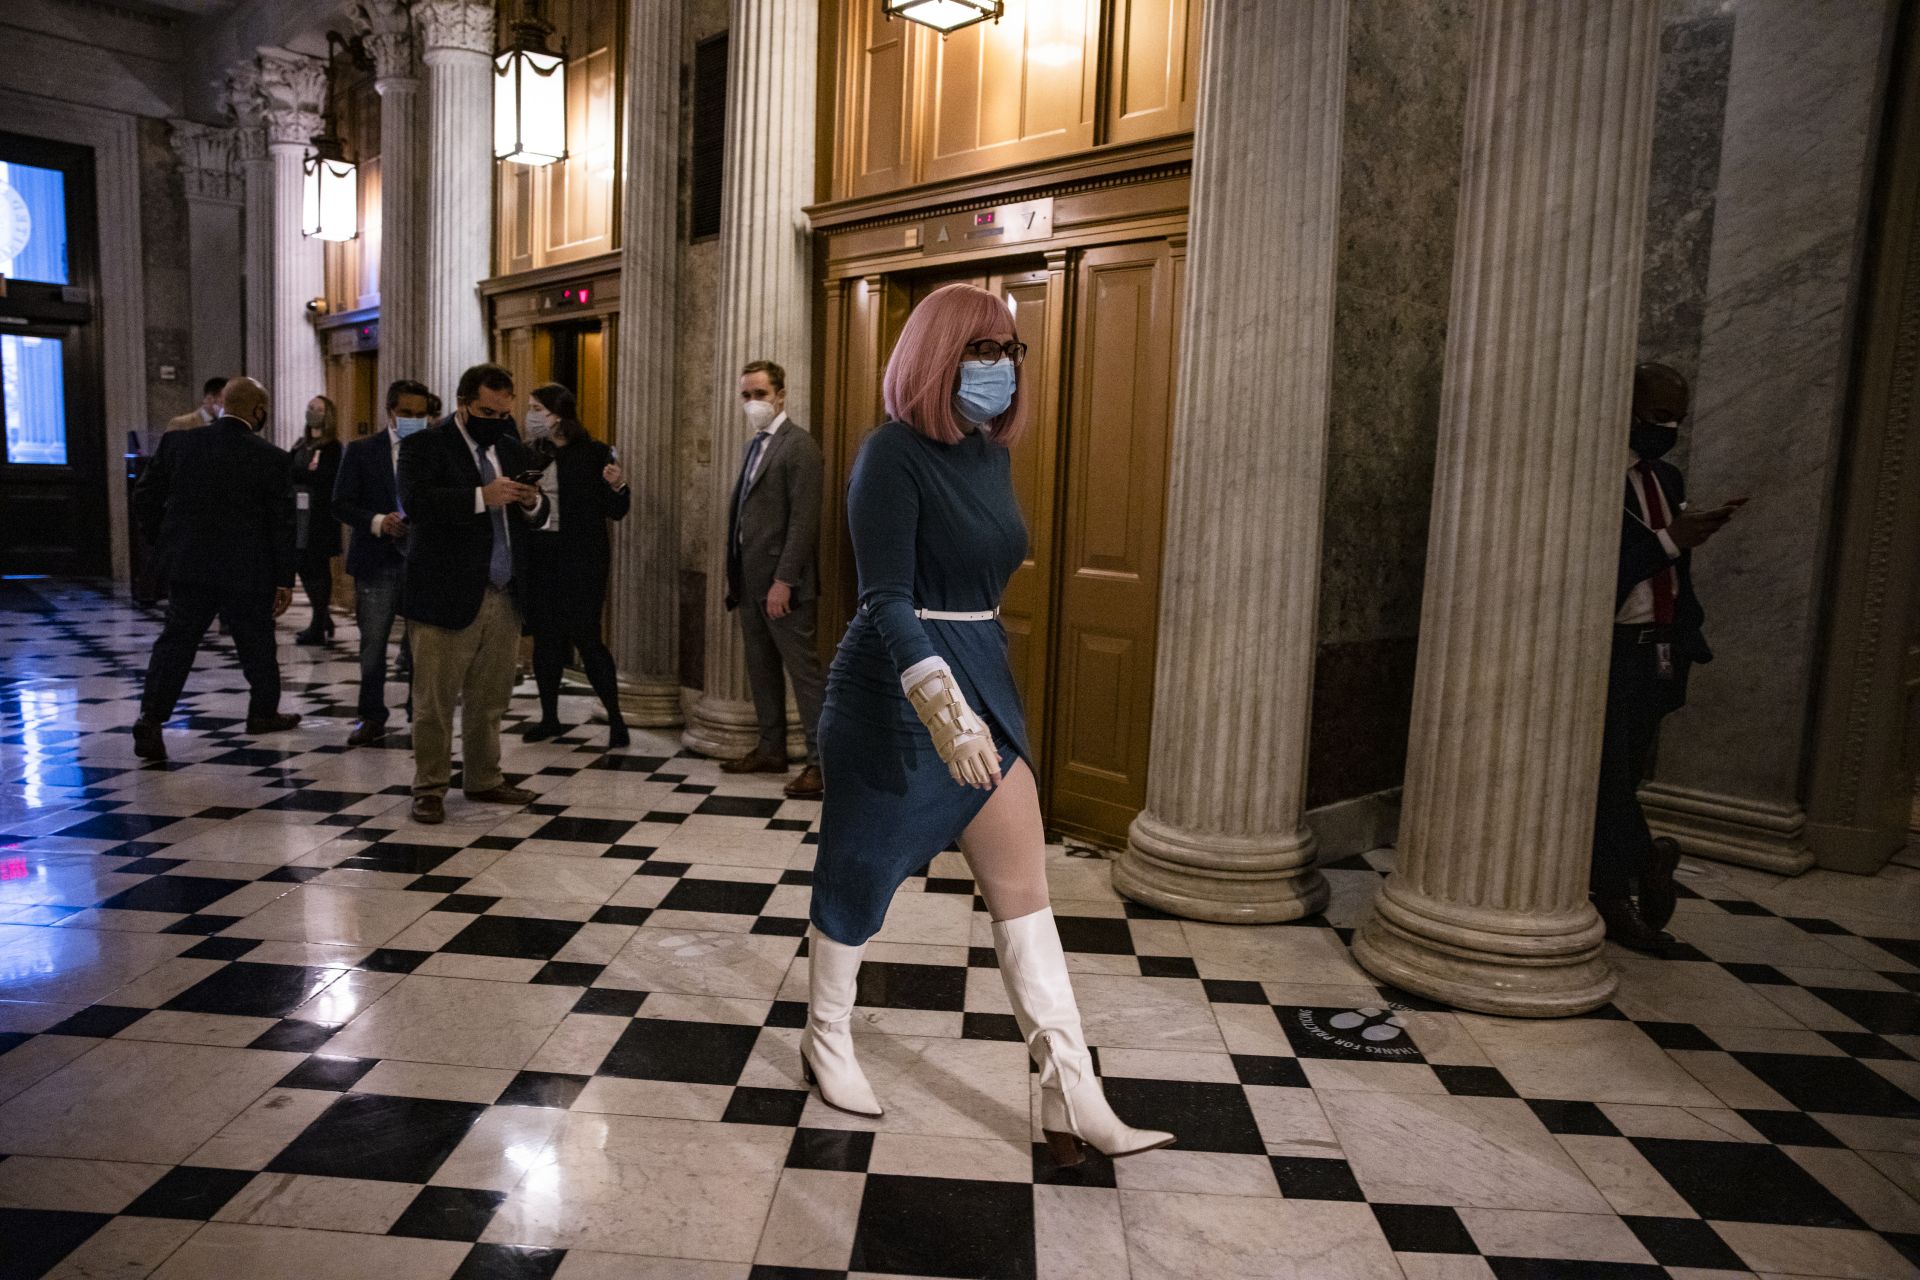 Сенатор Кристен Синема се отправя към етажа на Сената в сградата на Капитолия на САЩ на 20 декември 2020 г. във Вашингтон, окръг Колумбия. Републиканците и демократите в Сената най -накрая постигнаха споразумение относно законопроекта за облекчаване на коронавируса.